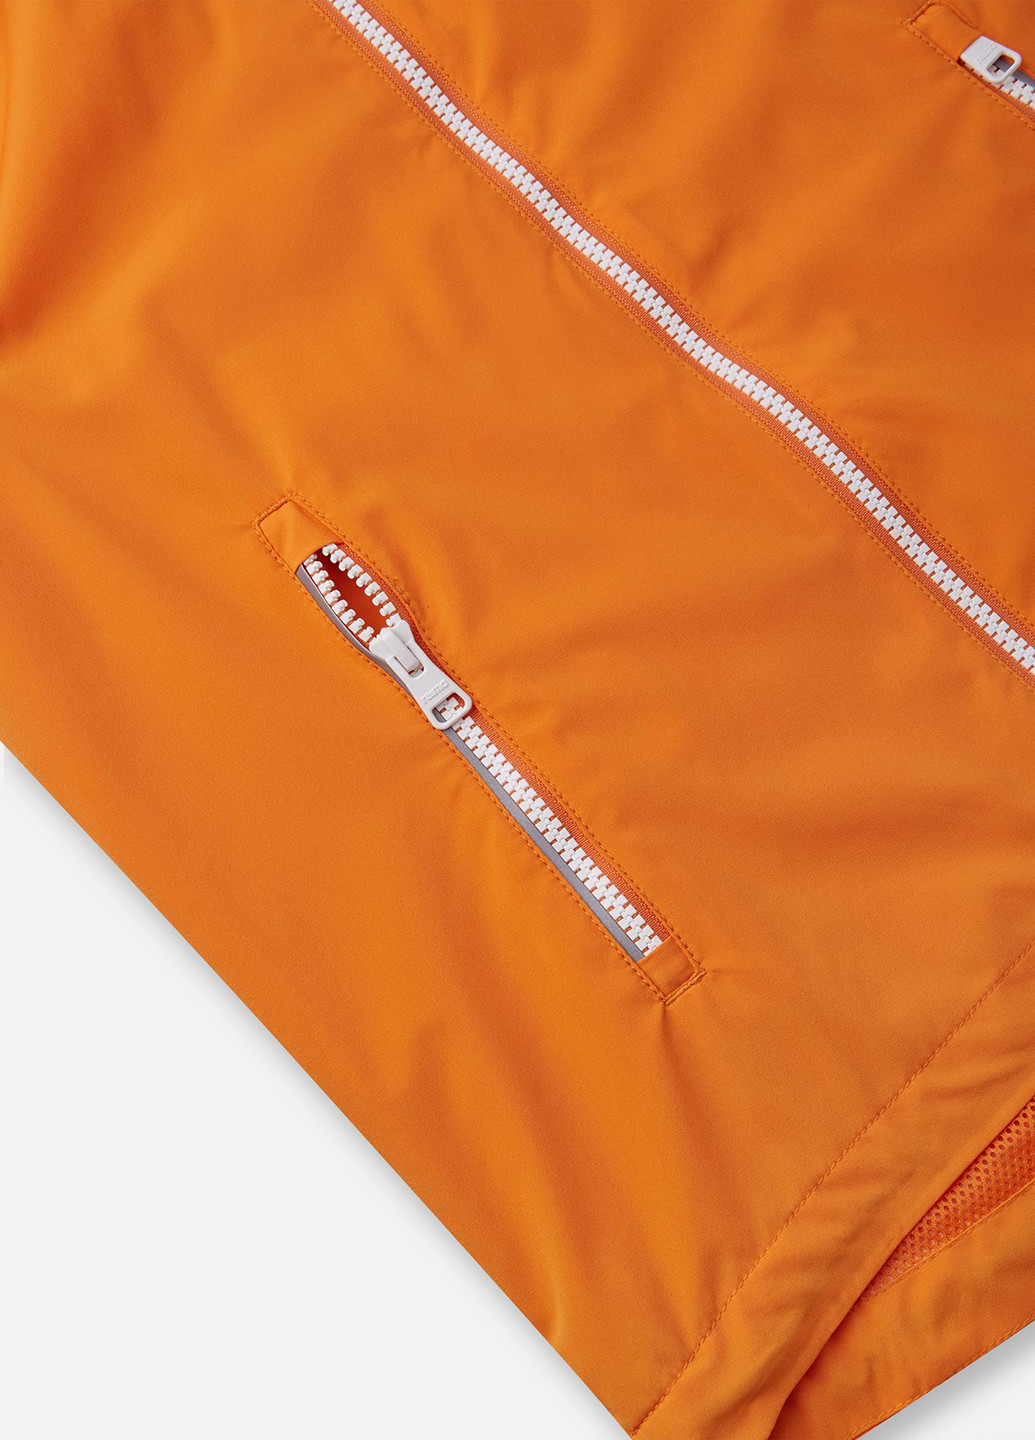 Оранжевая демисезонная куртка облегчённая Reima Mist